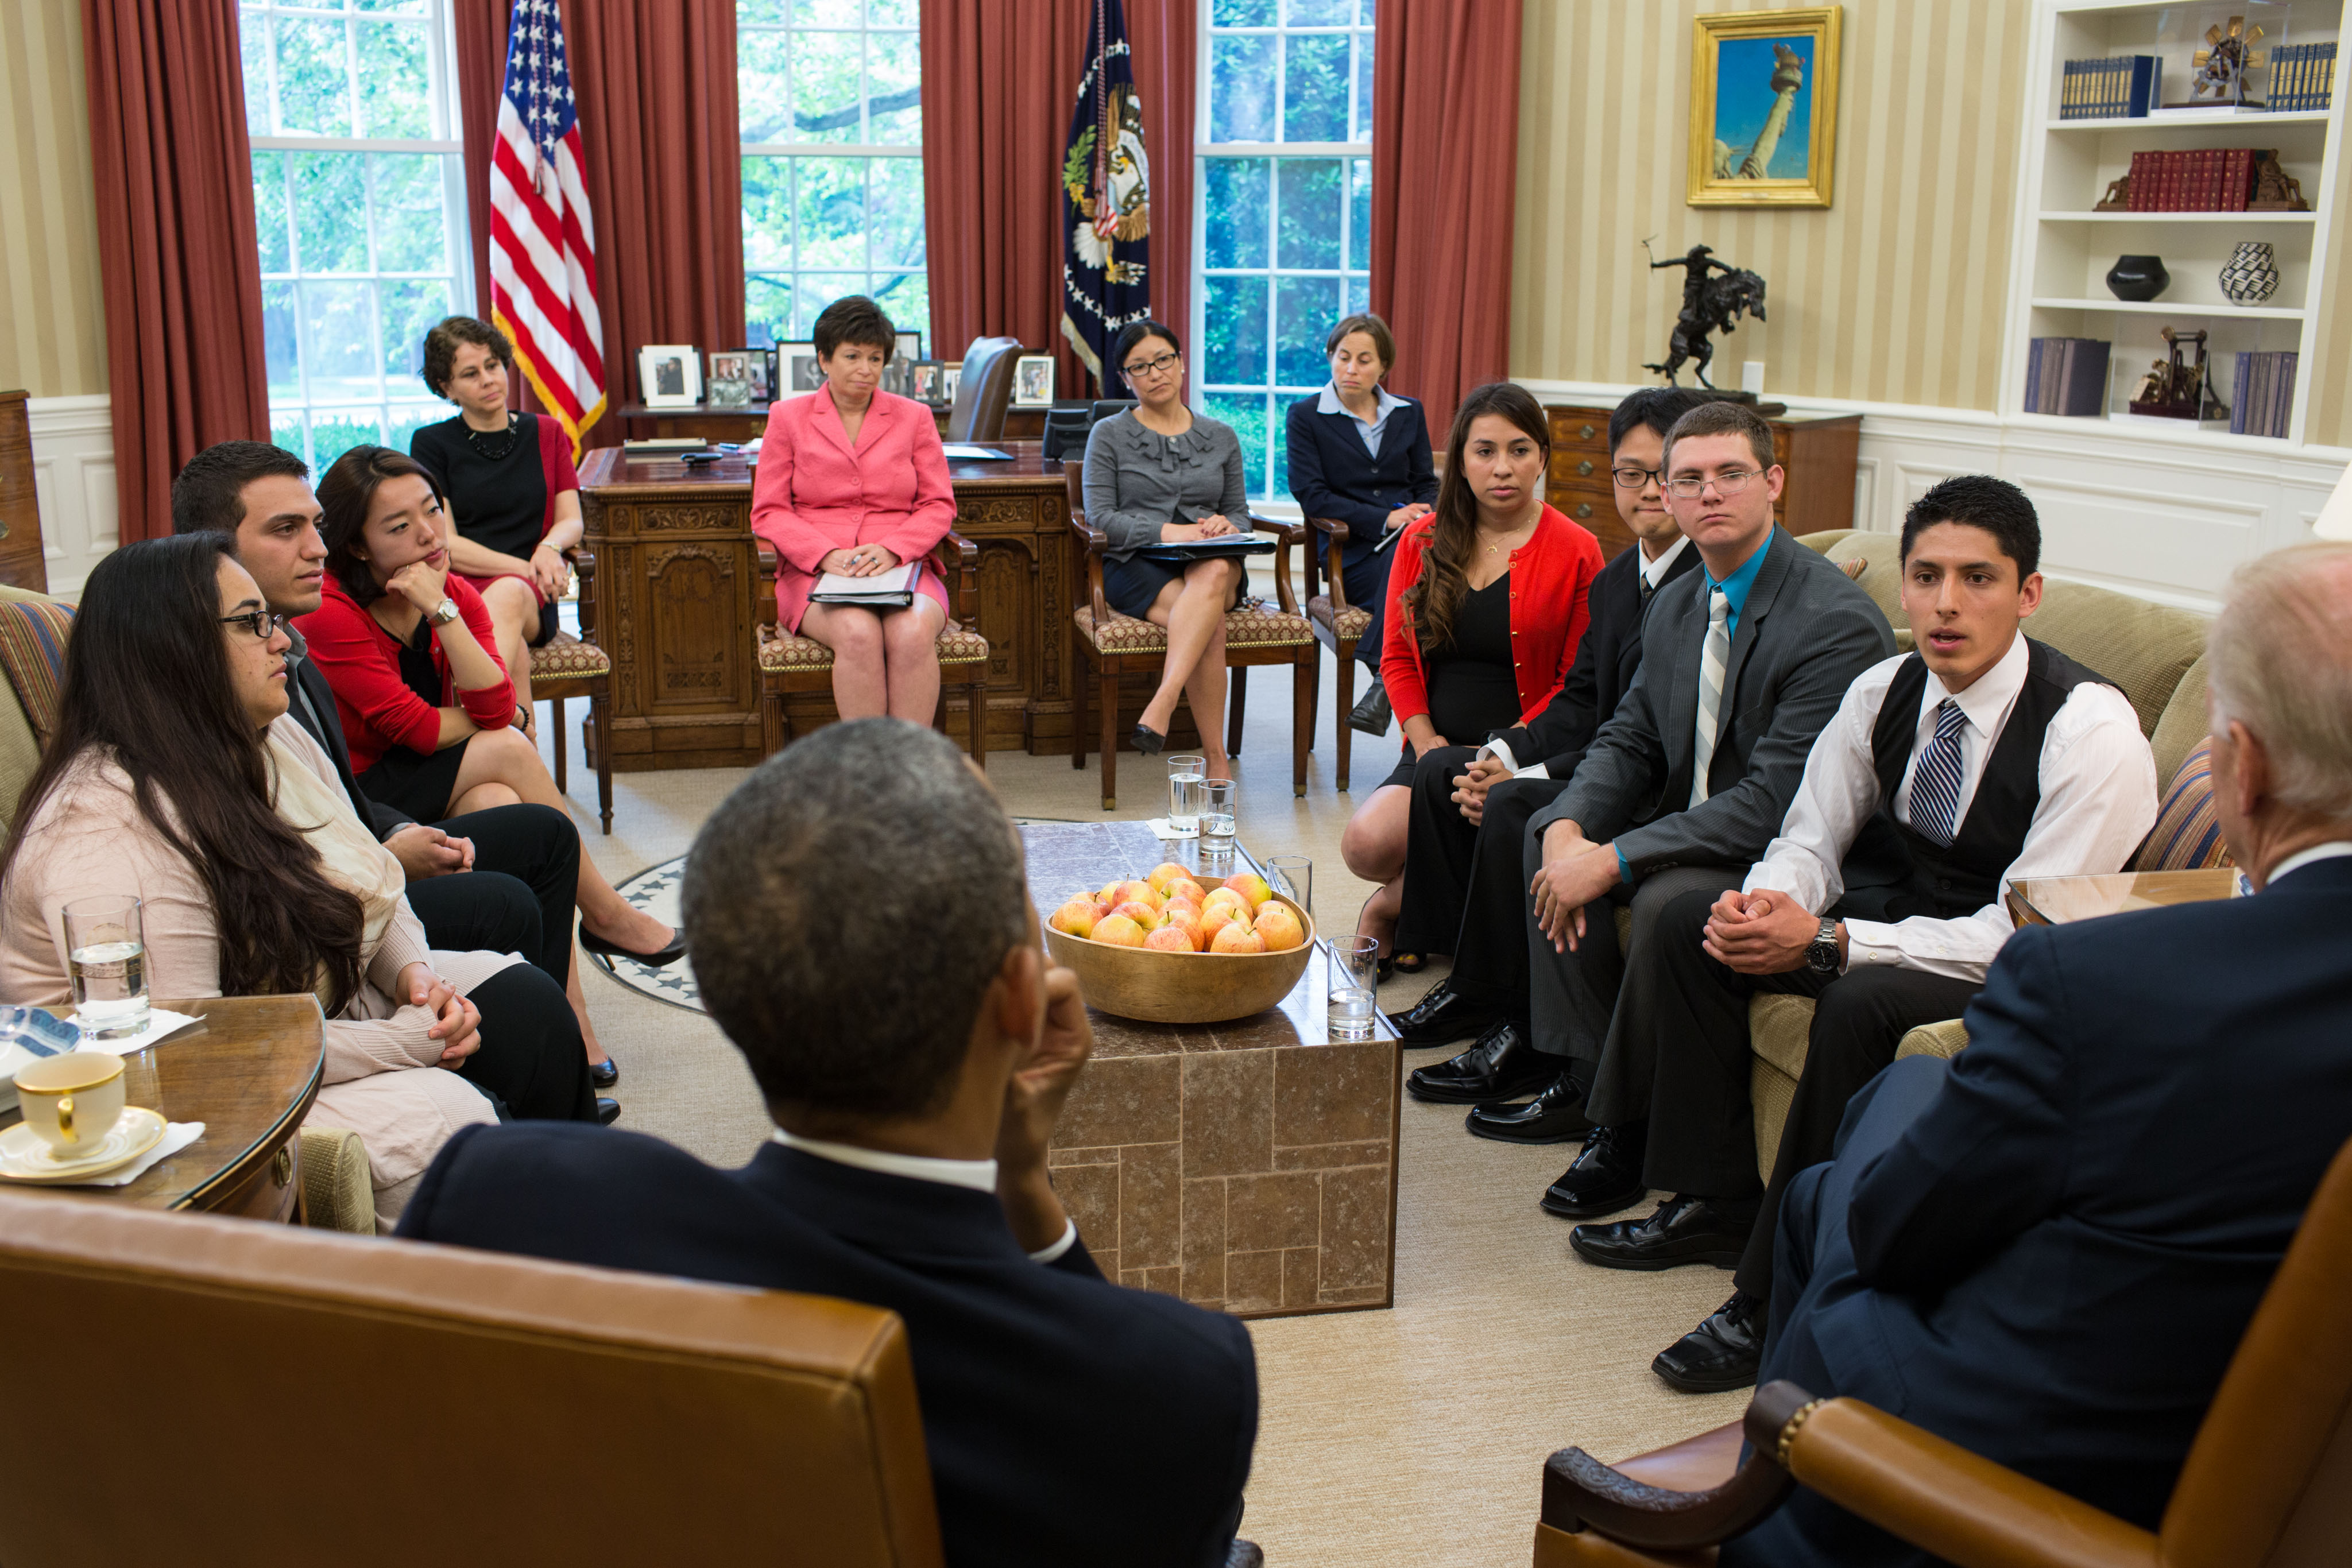 El Presidente Barack Obama y el Vicepresidente Joe Biden se reunieron en la oficina presidencial con soñadores